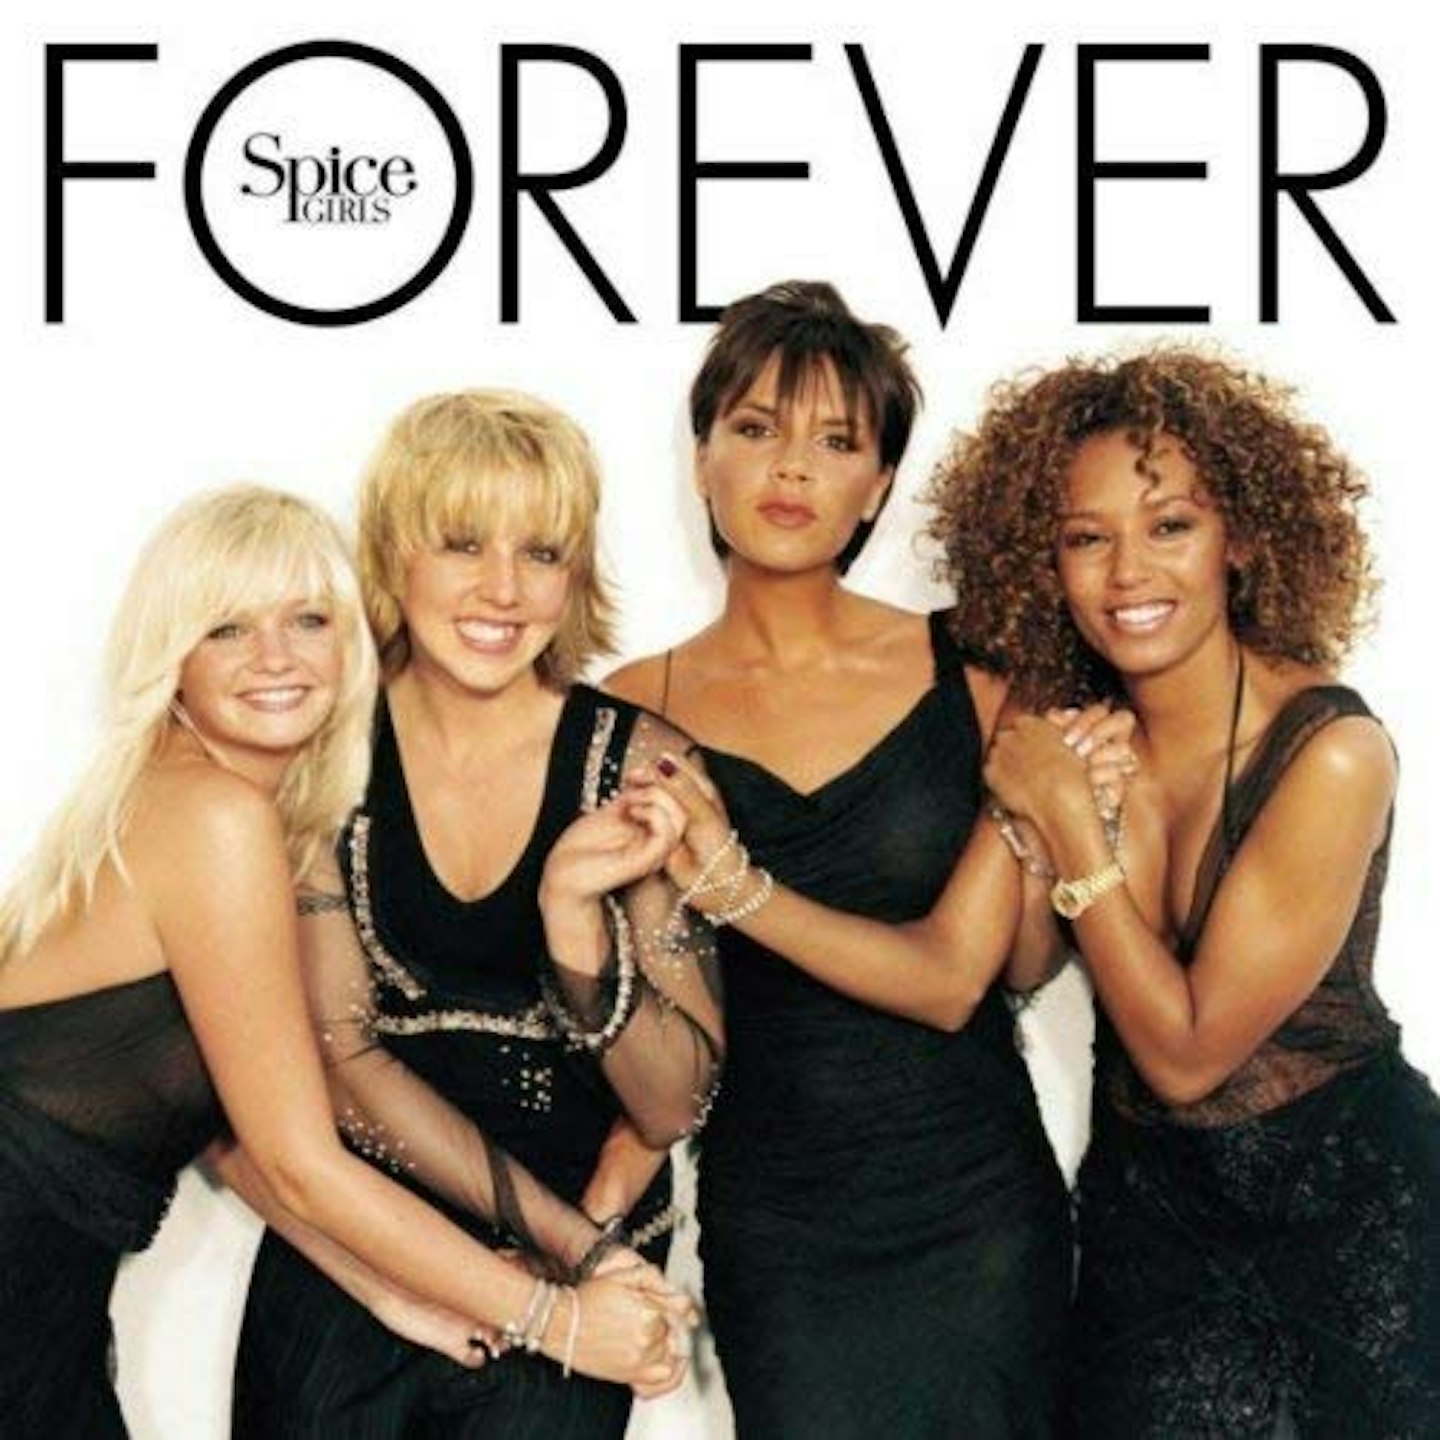 'Forever' (album)